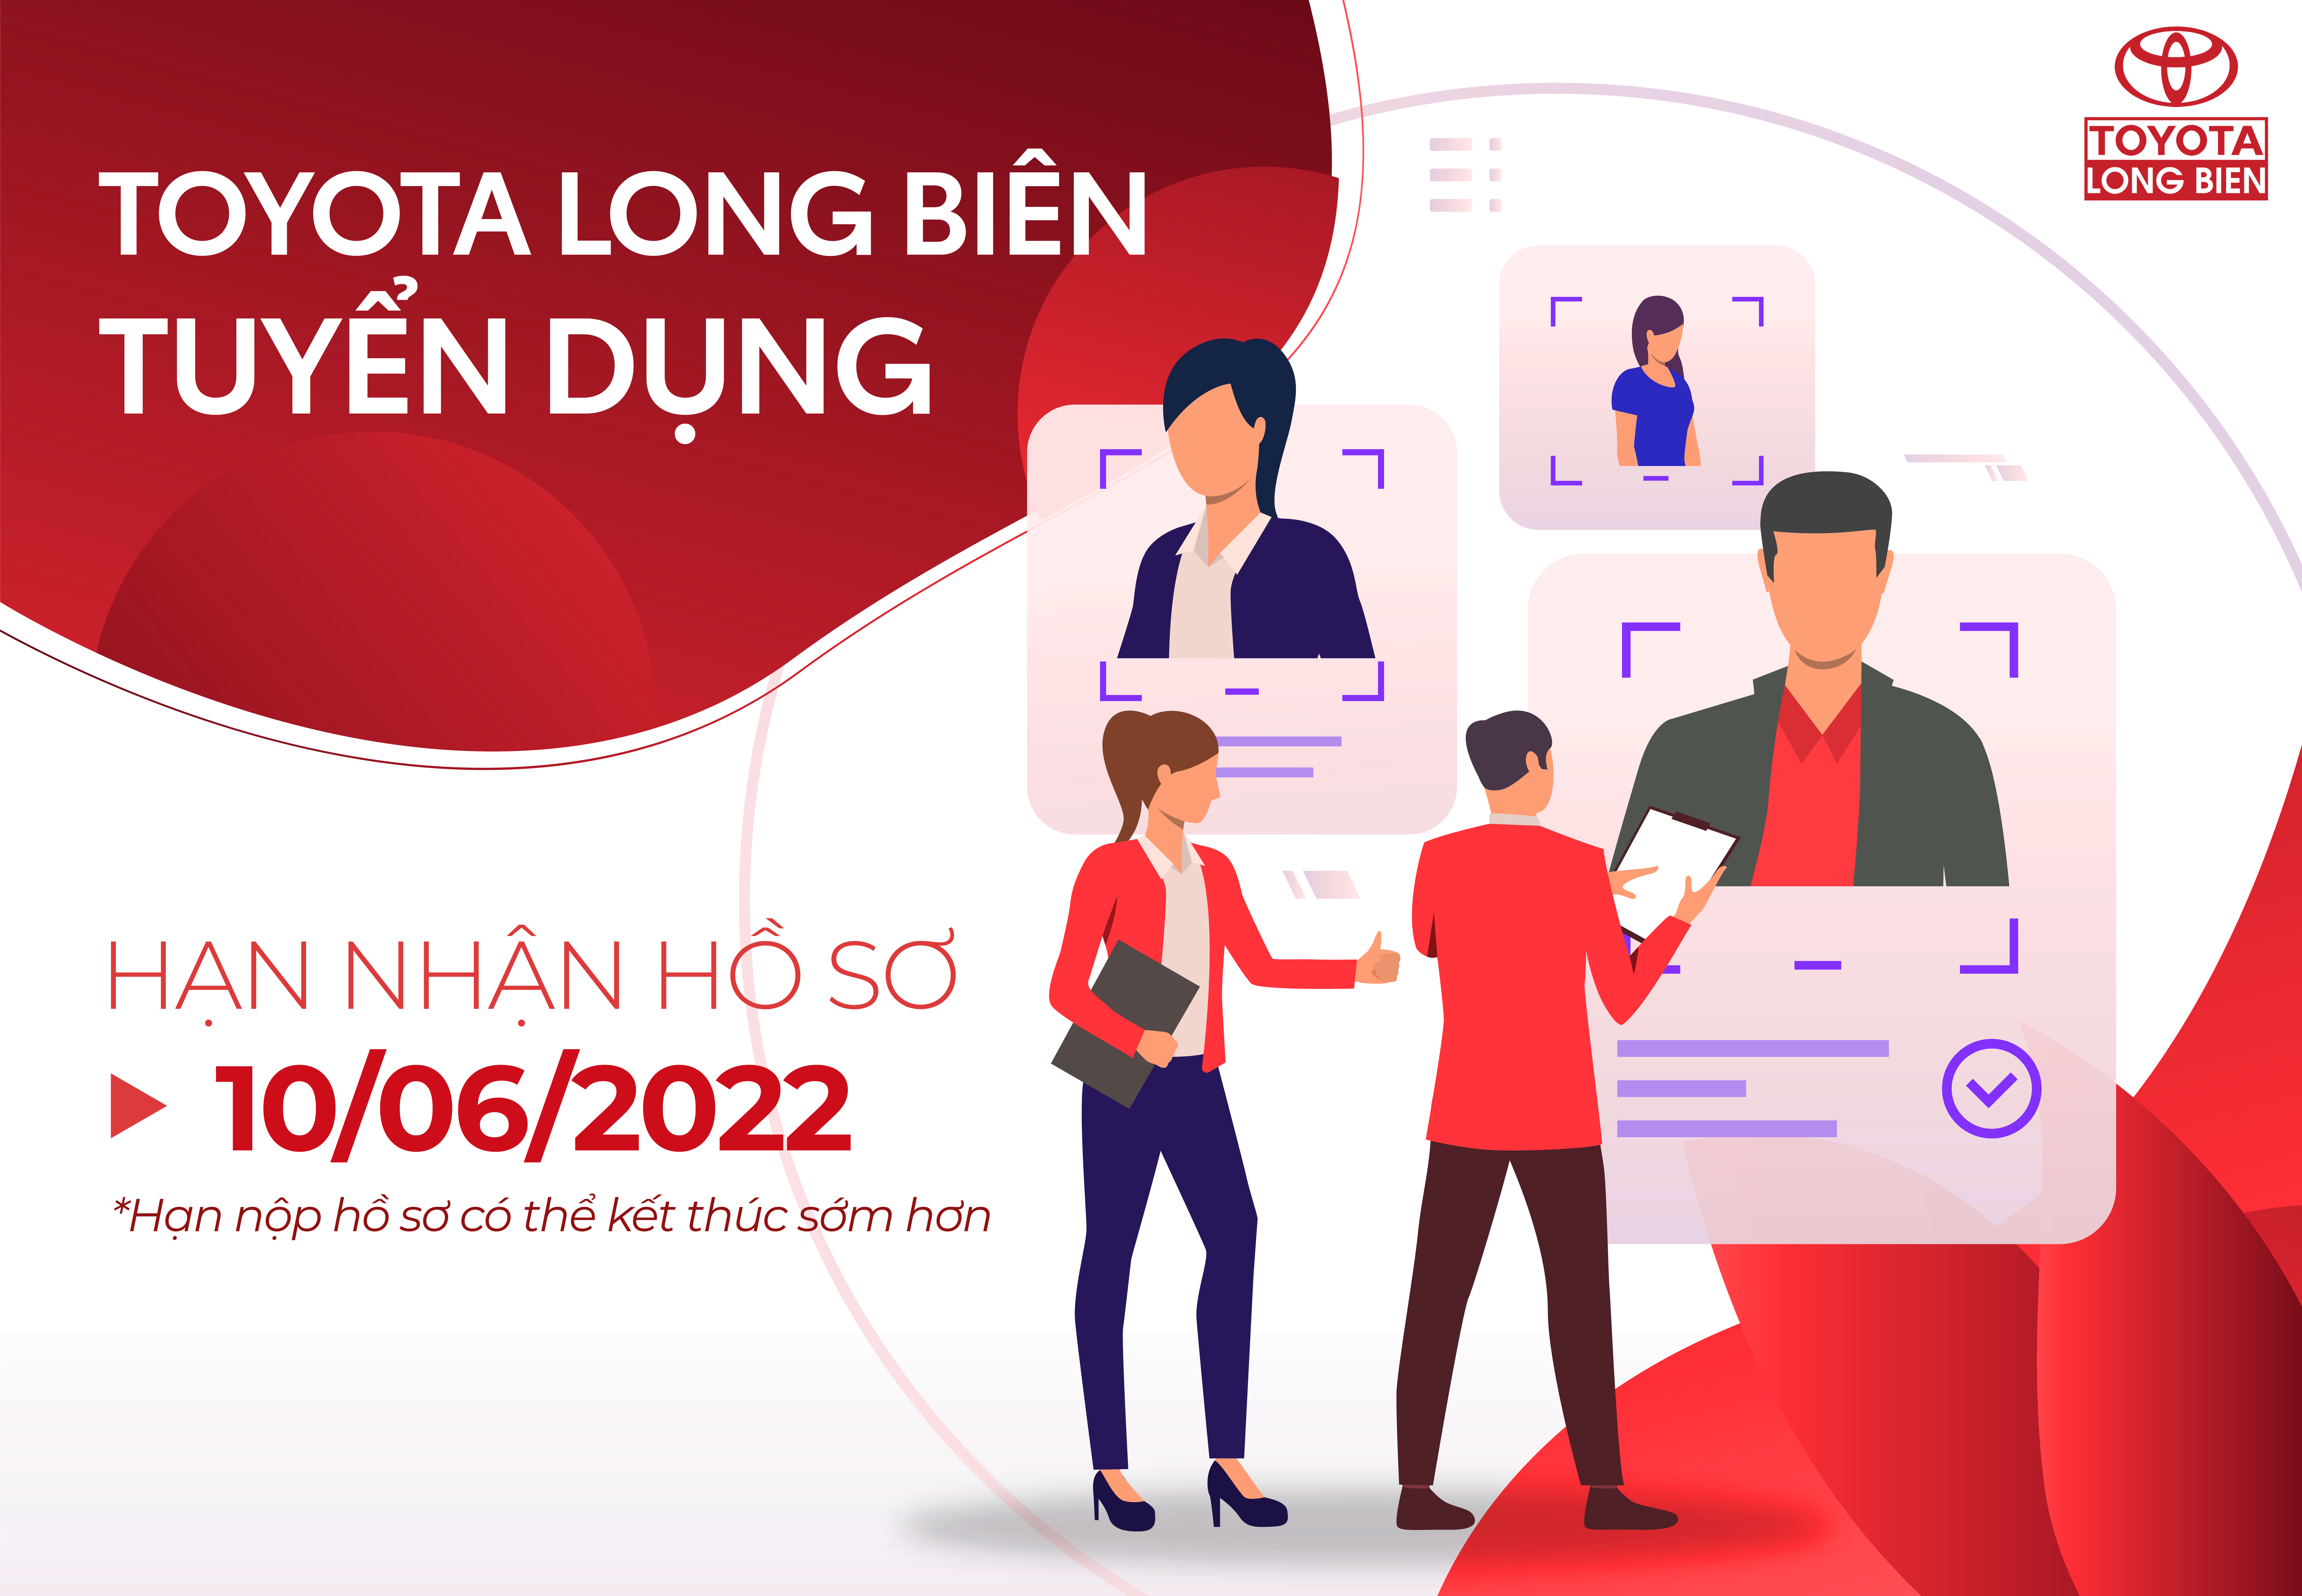 Toyota Long Biên tuyển dụng tháng 6/2022, nhiều vị trí và cơ hội việc làm hấp dẫn!